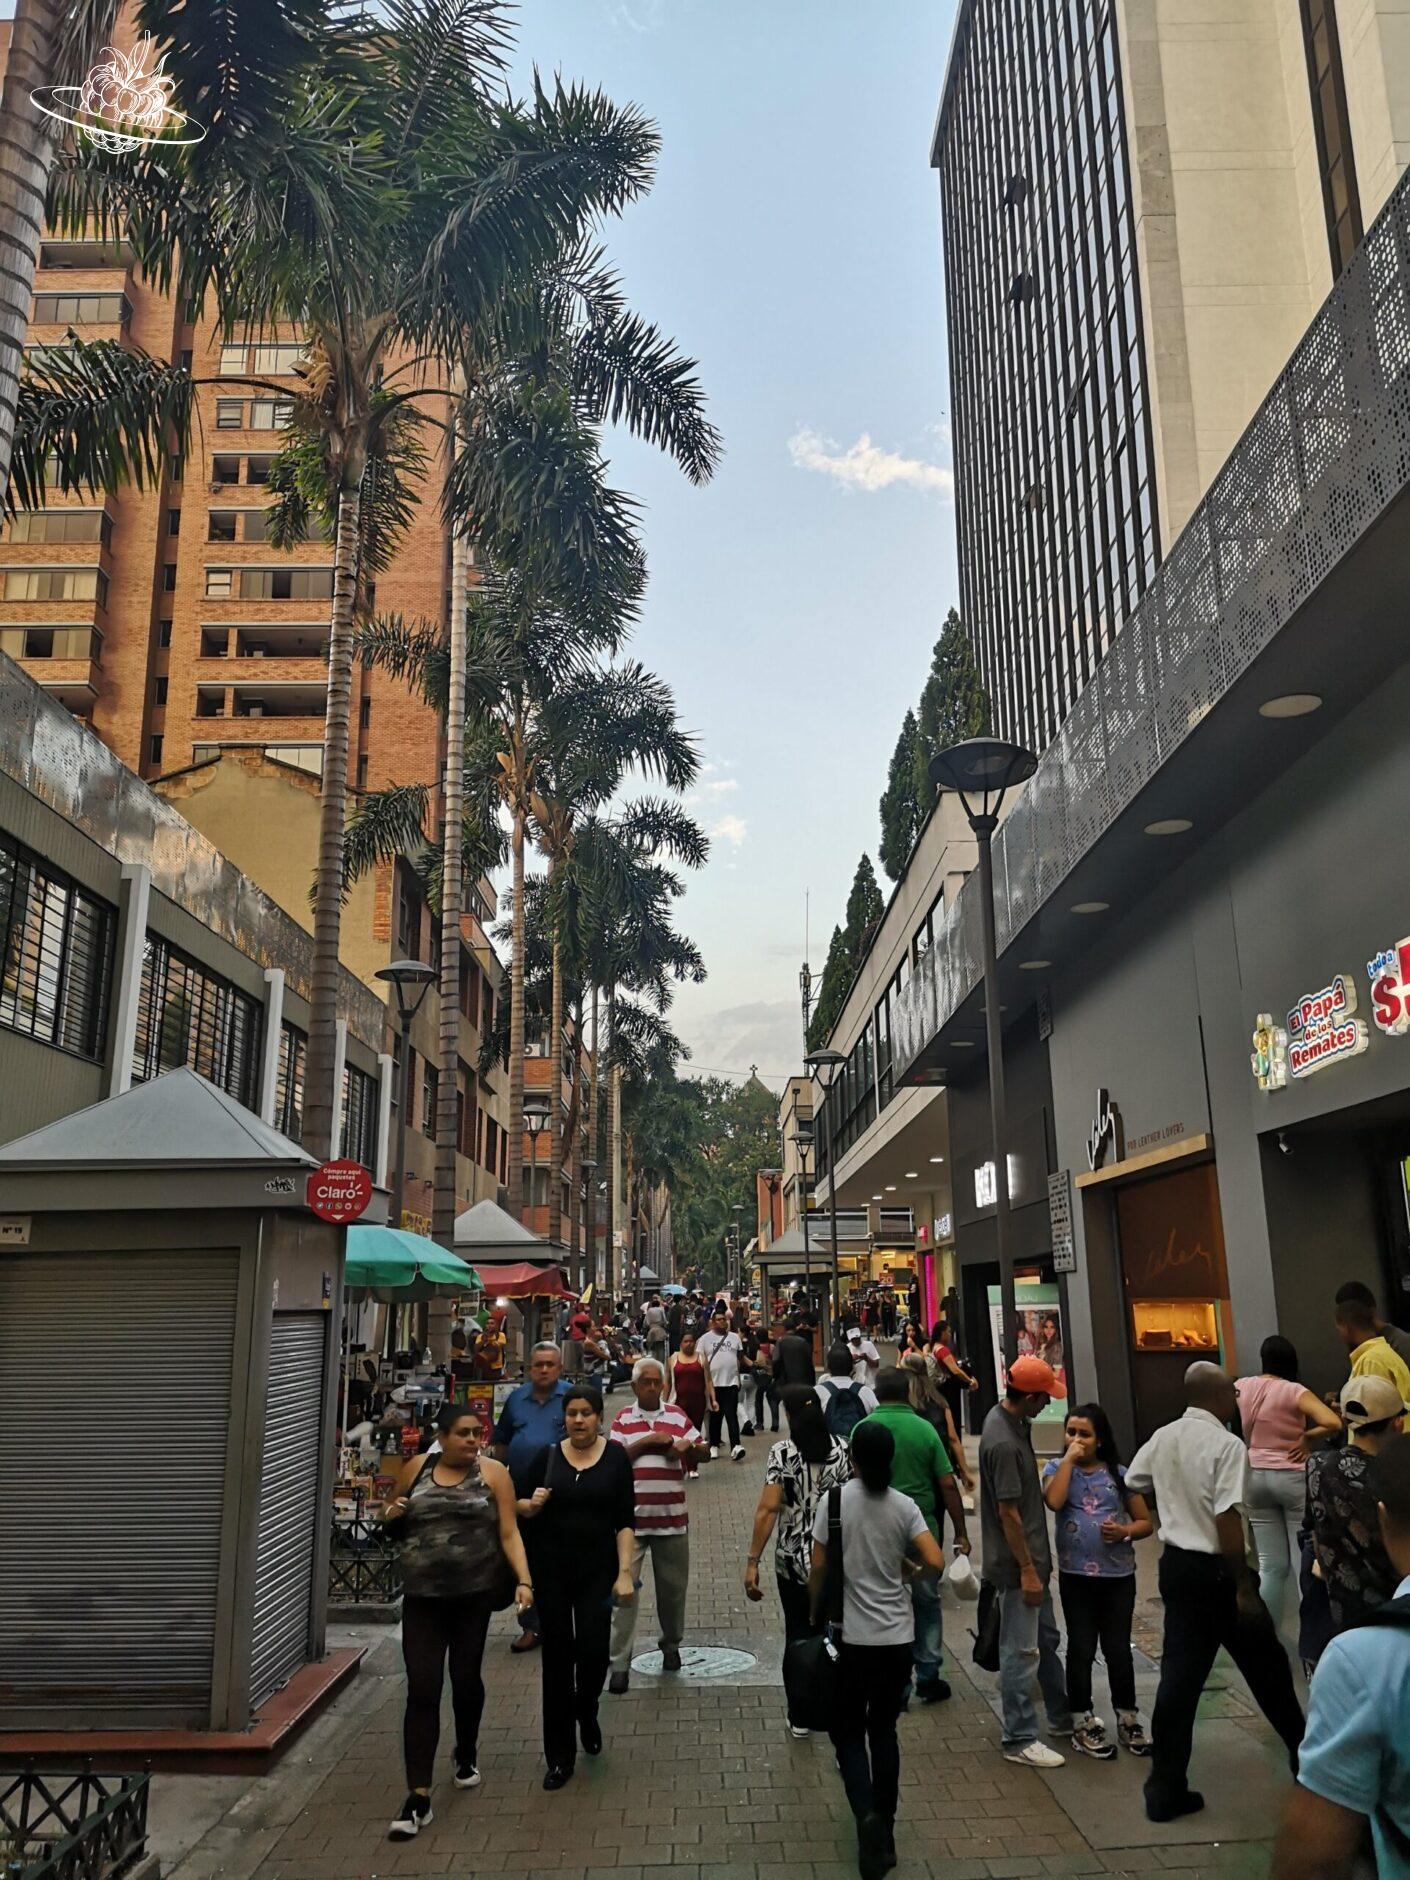 Einkaufspassage mit vielen Leuten und Palmen